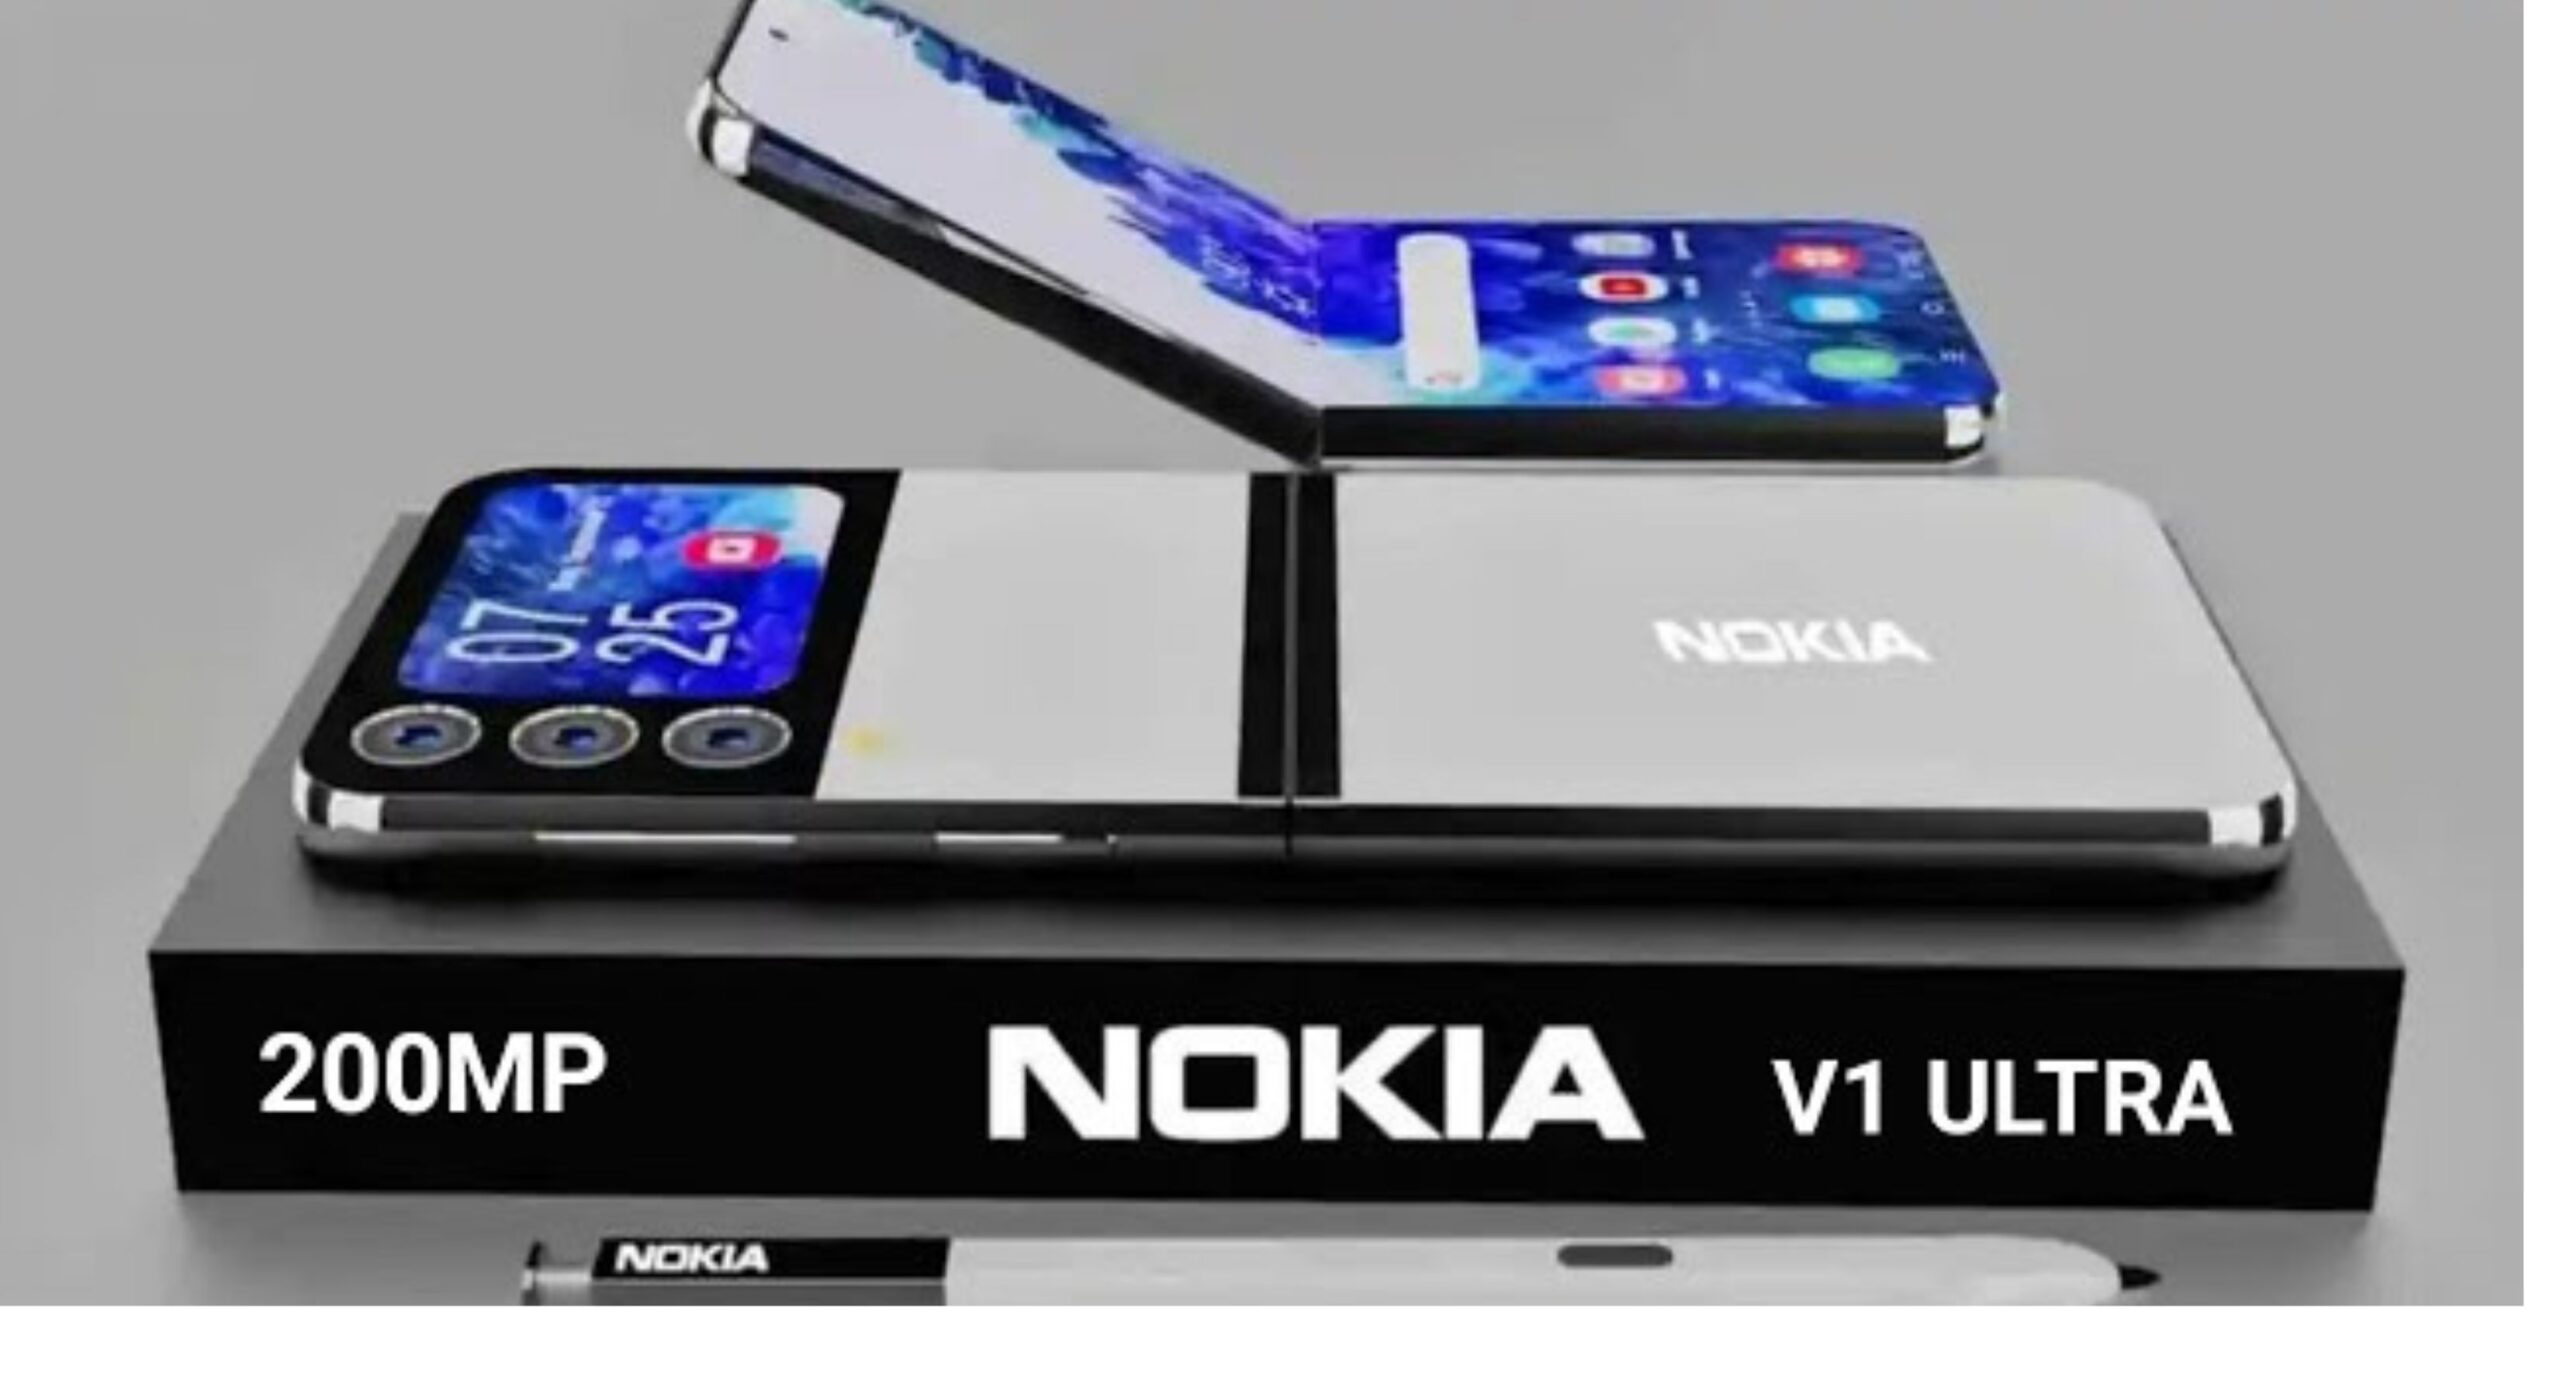 Nokia V1 Ultra 5G Smartphone